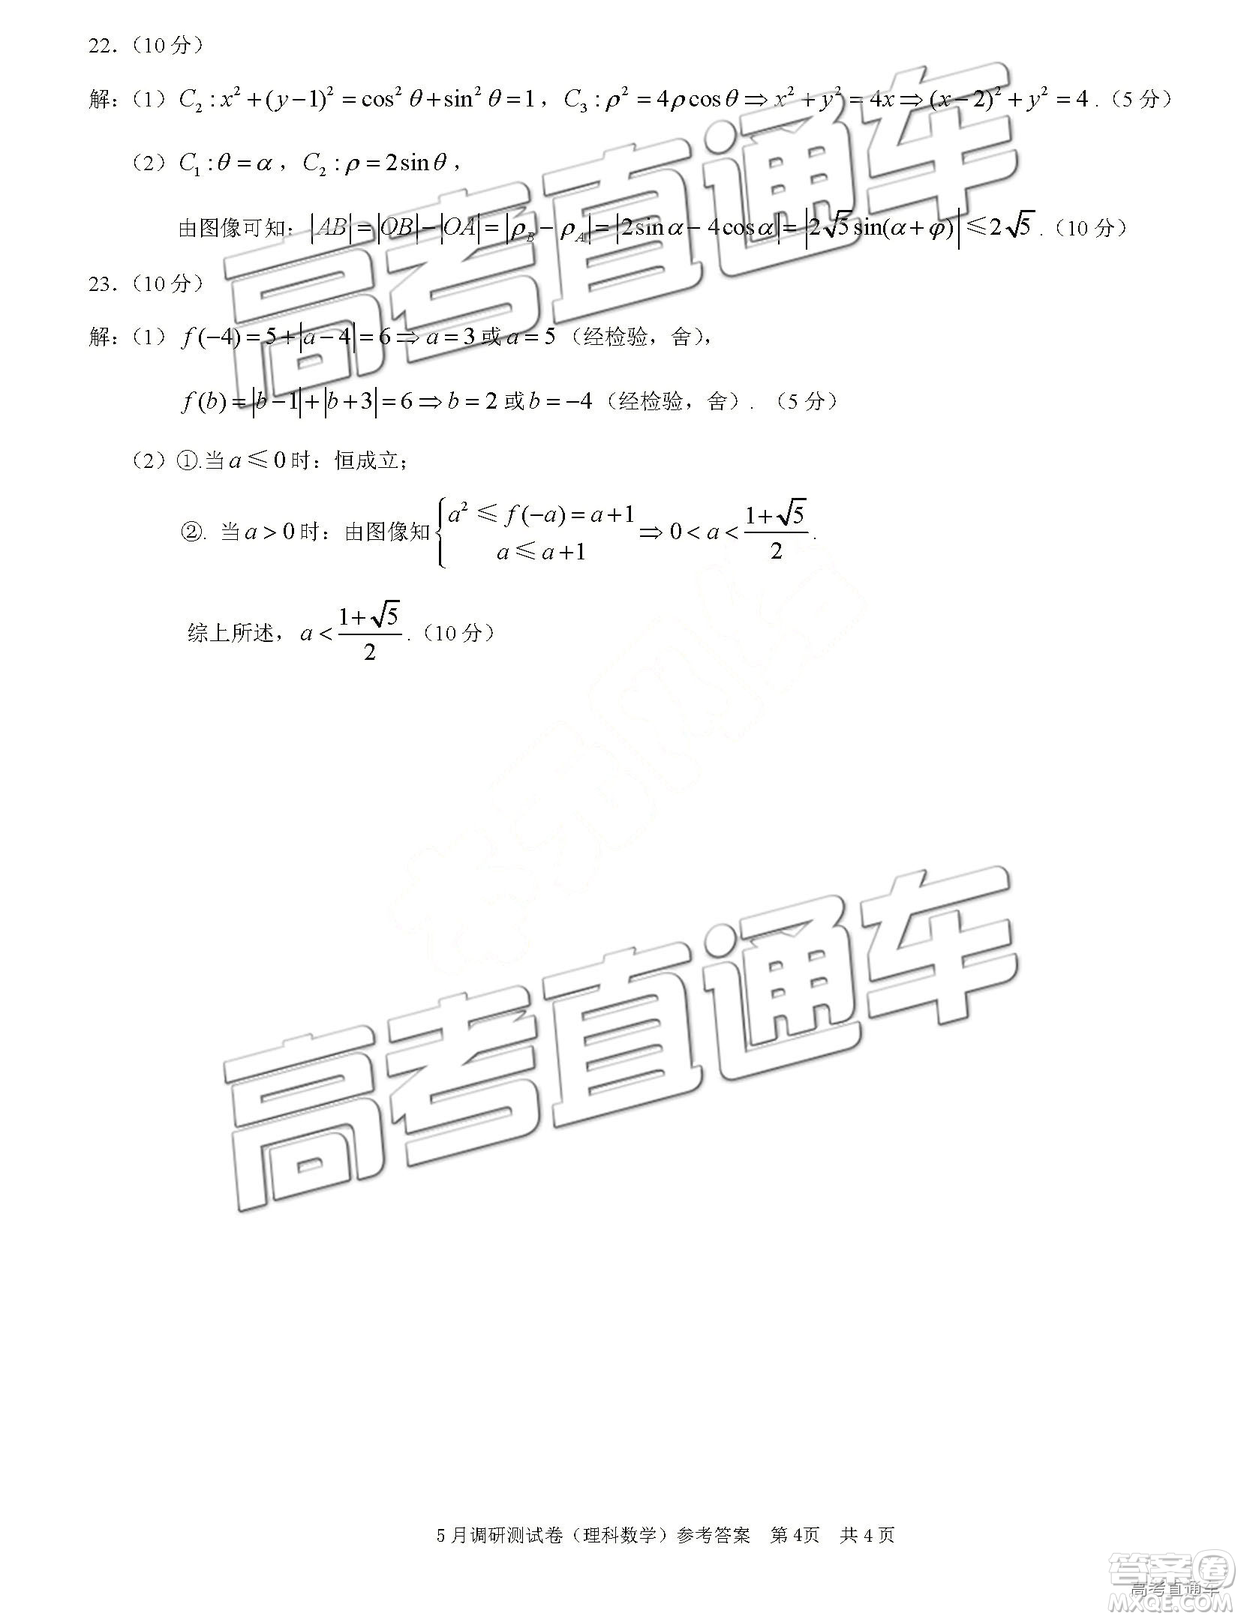 2019年重庆三诊文理数参考答案